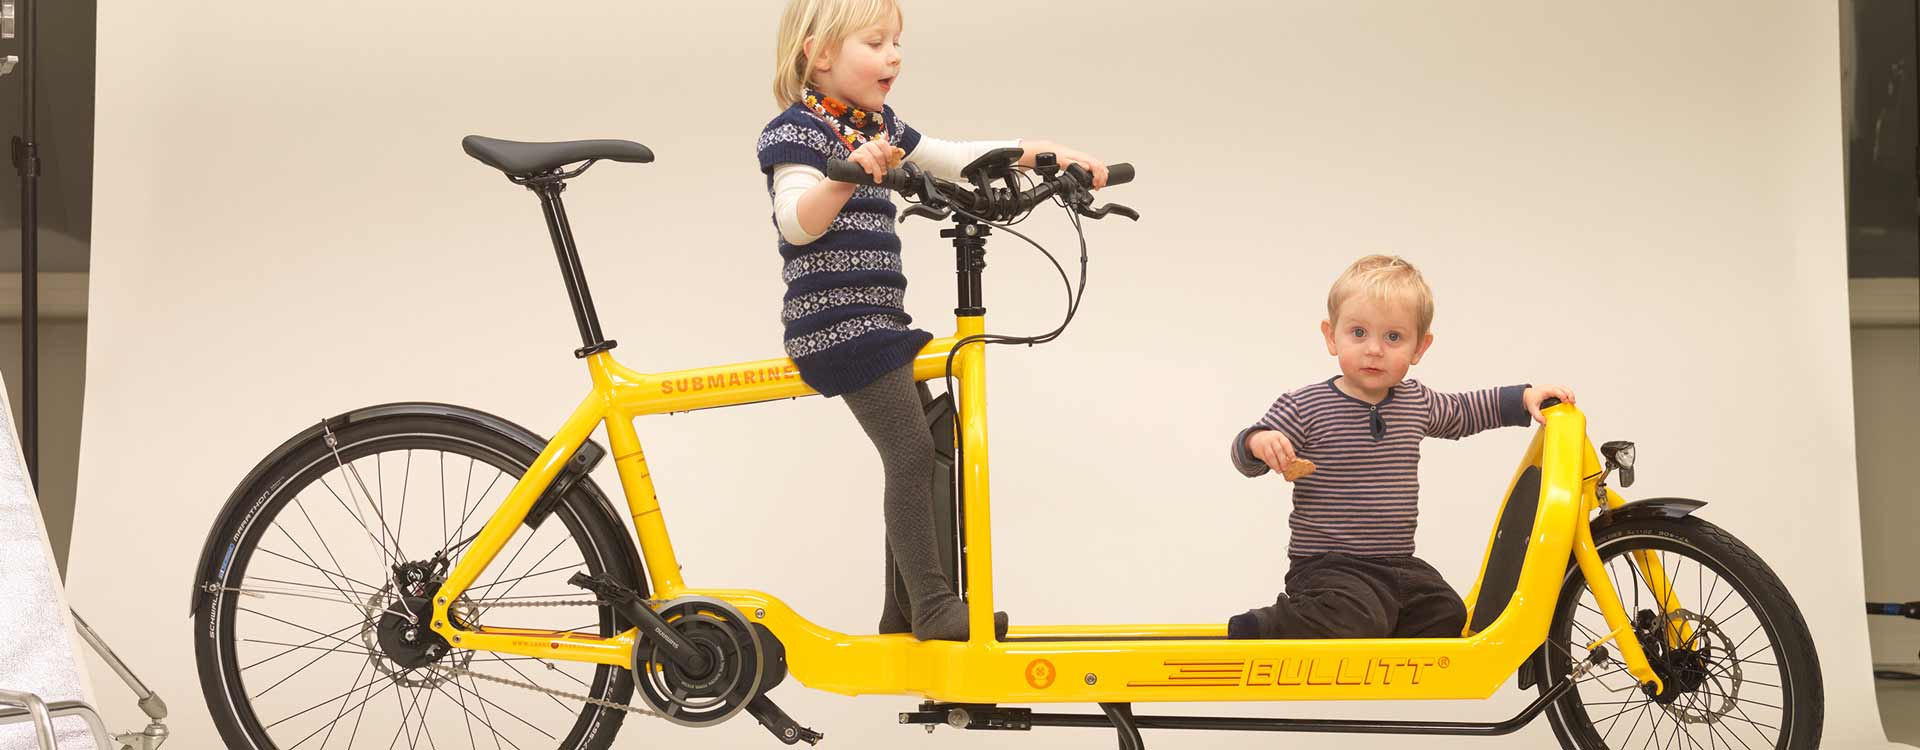 Kinder spielen auf einem gelben Bullitt Lastenrad